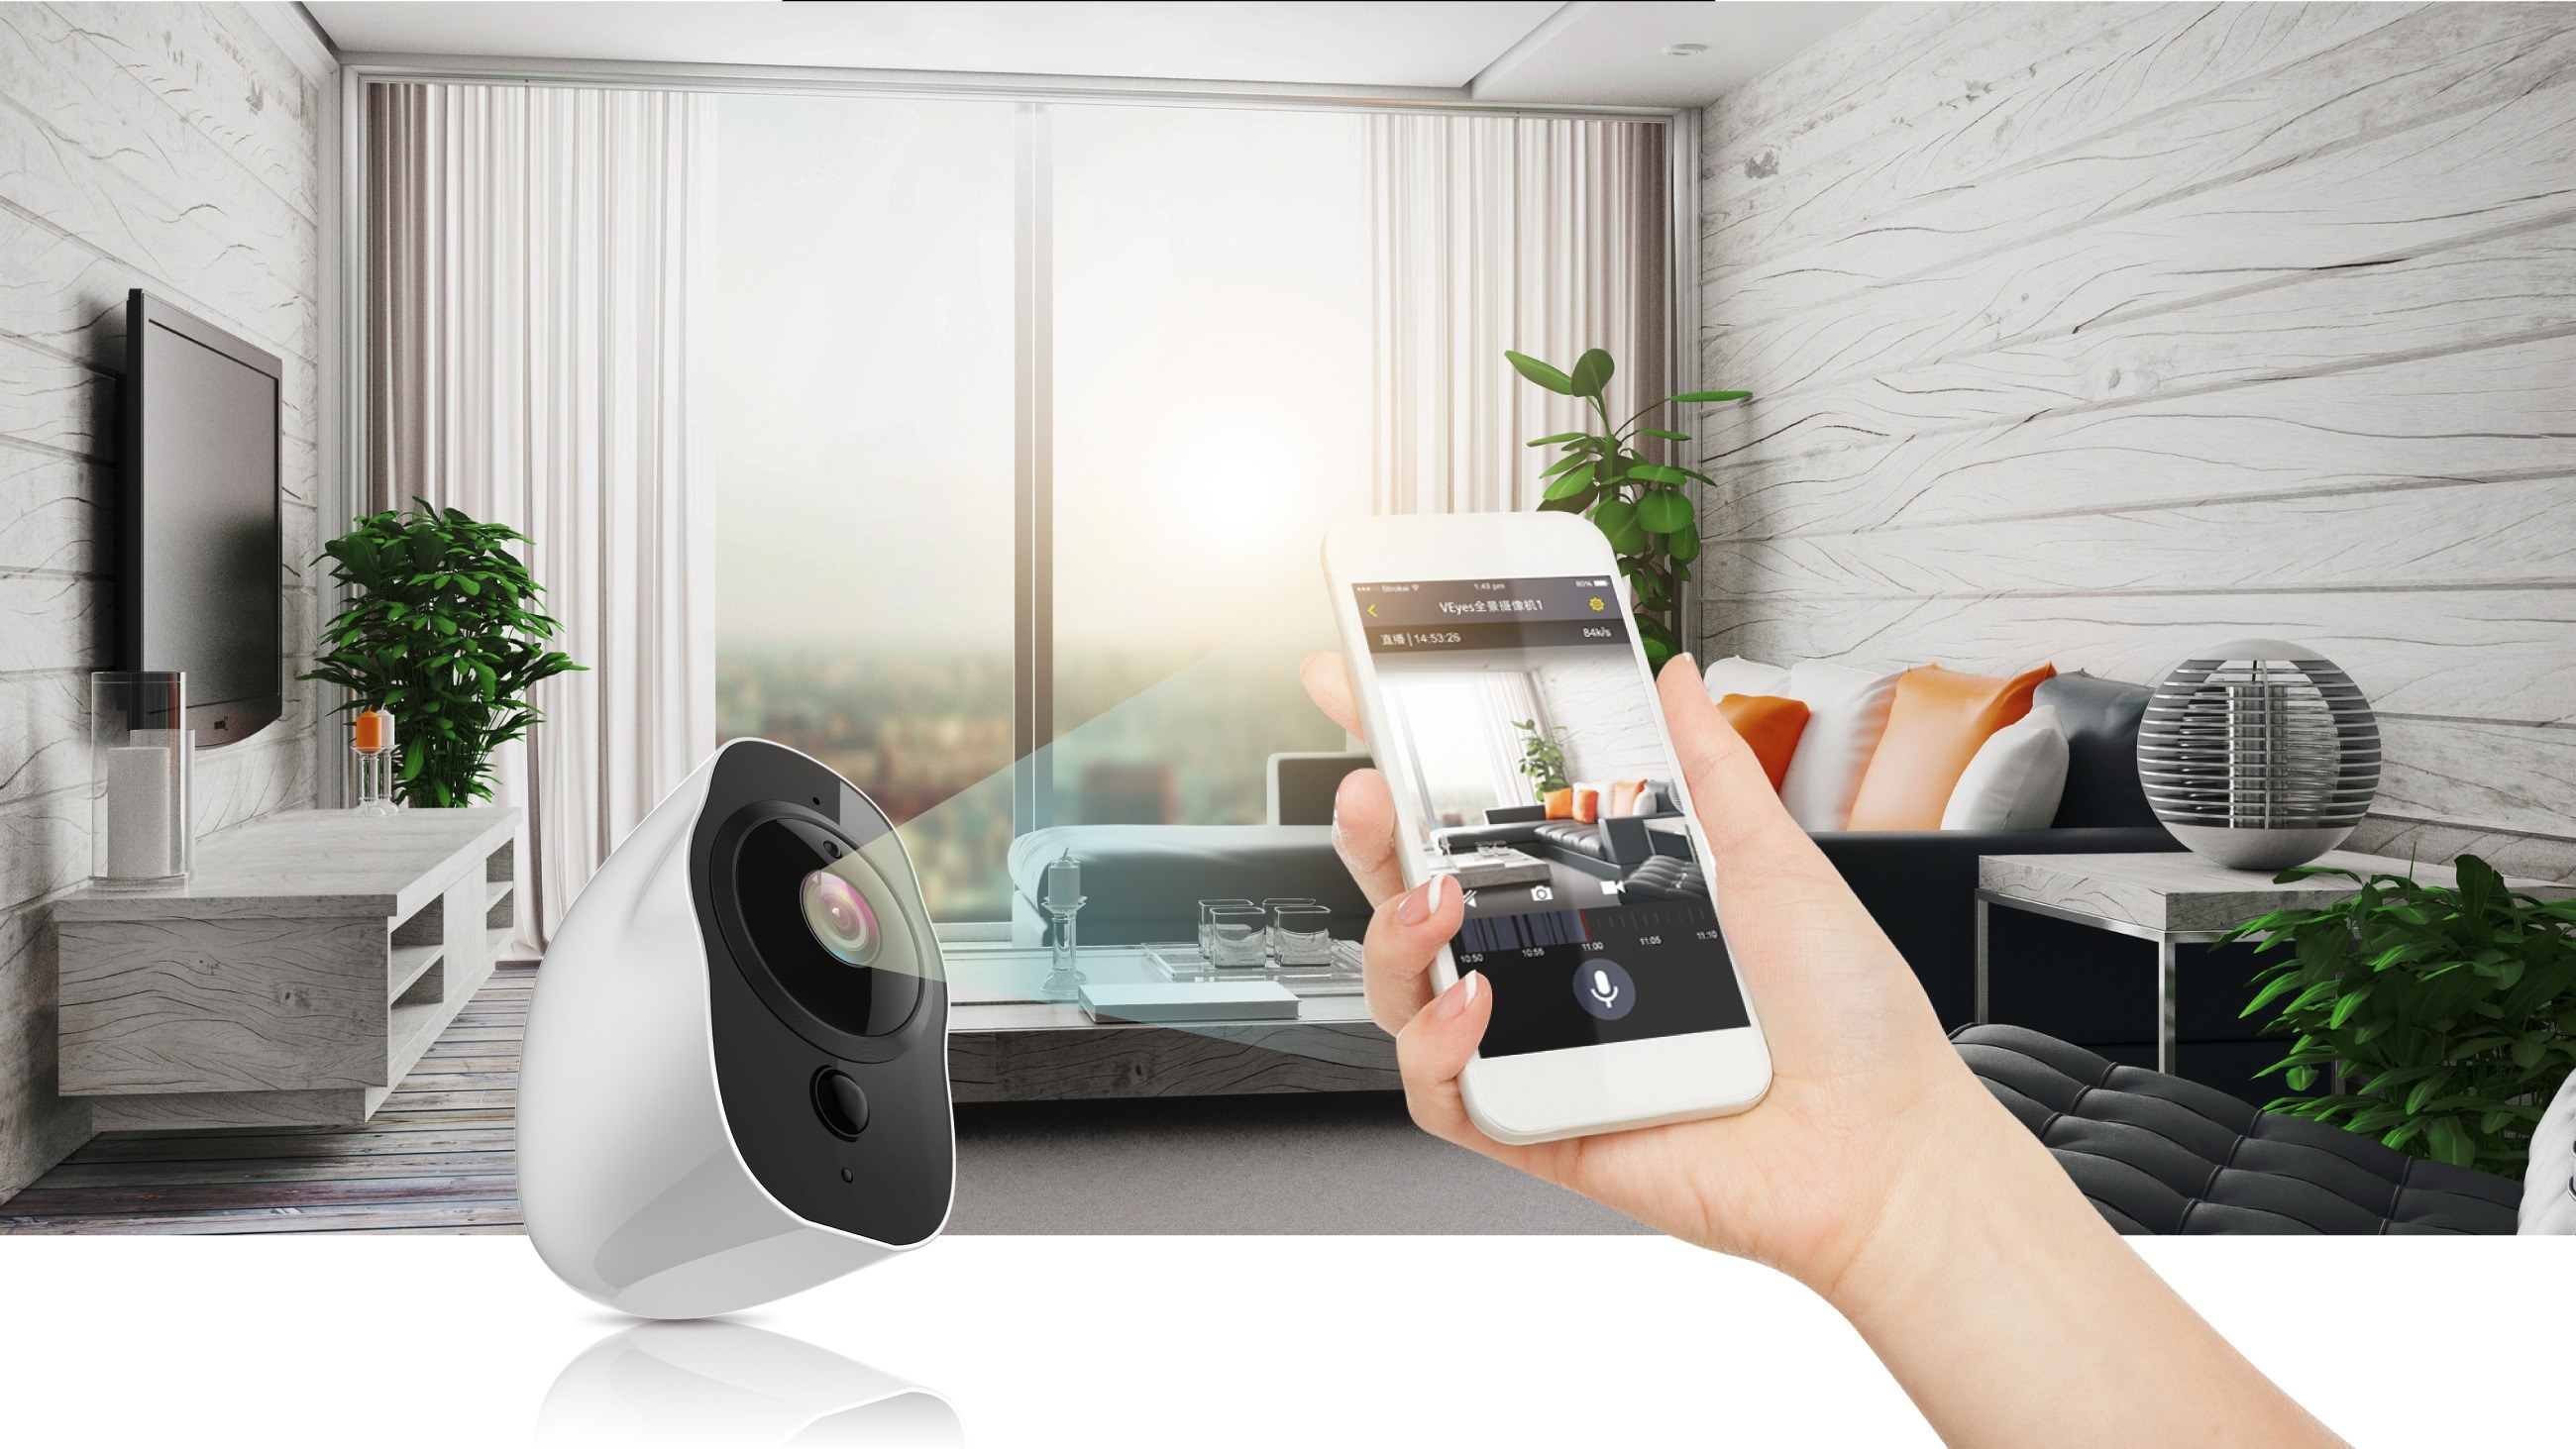 Включи умную камеру решения. WIFI Smart Camera ip66. Видеонаблюдение умный дом. Умный дом камеры видеонаблюдения. Видеонаблюдение на смартфоне.